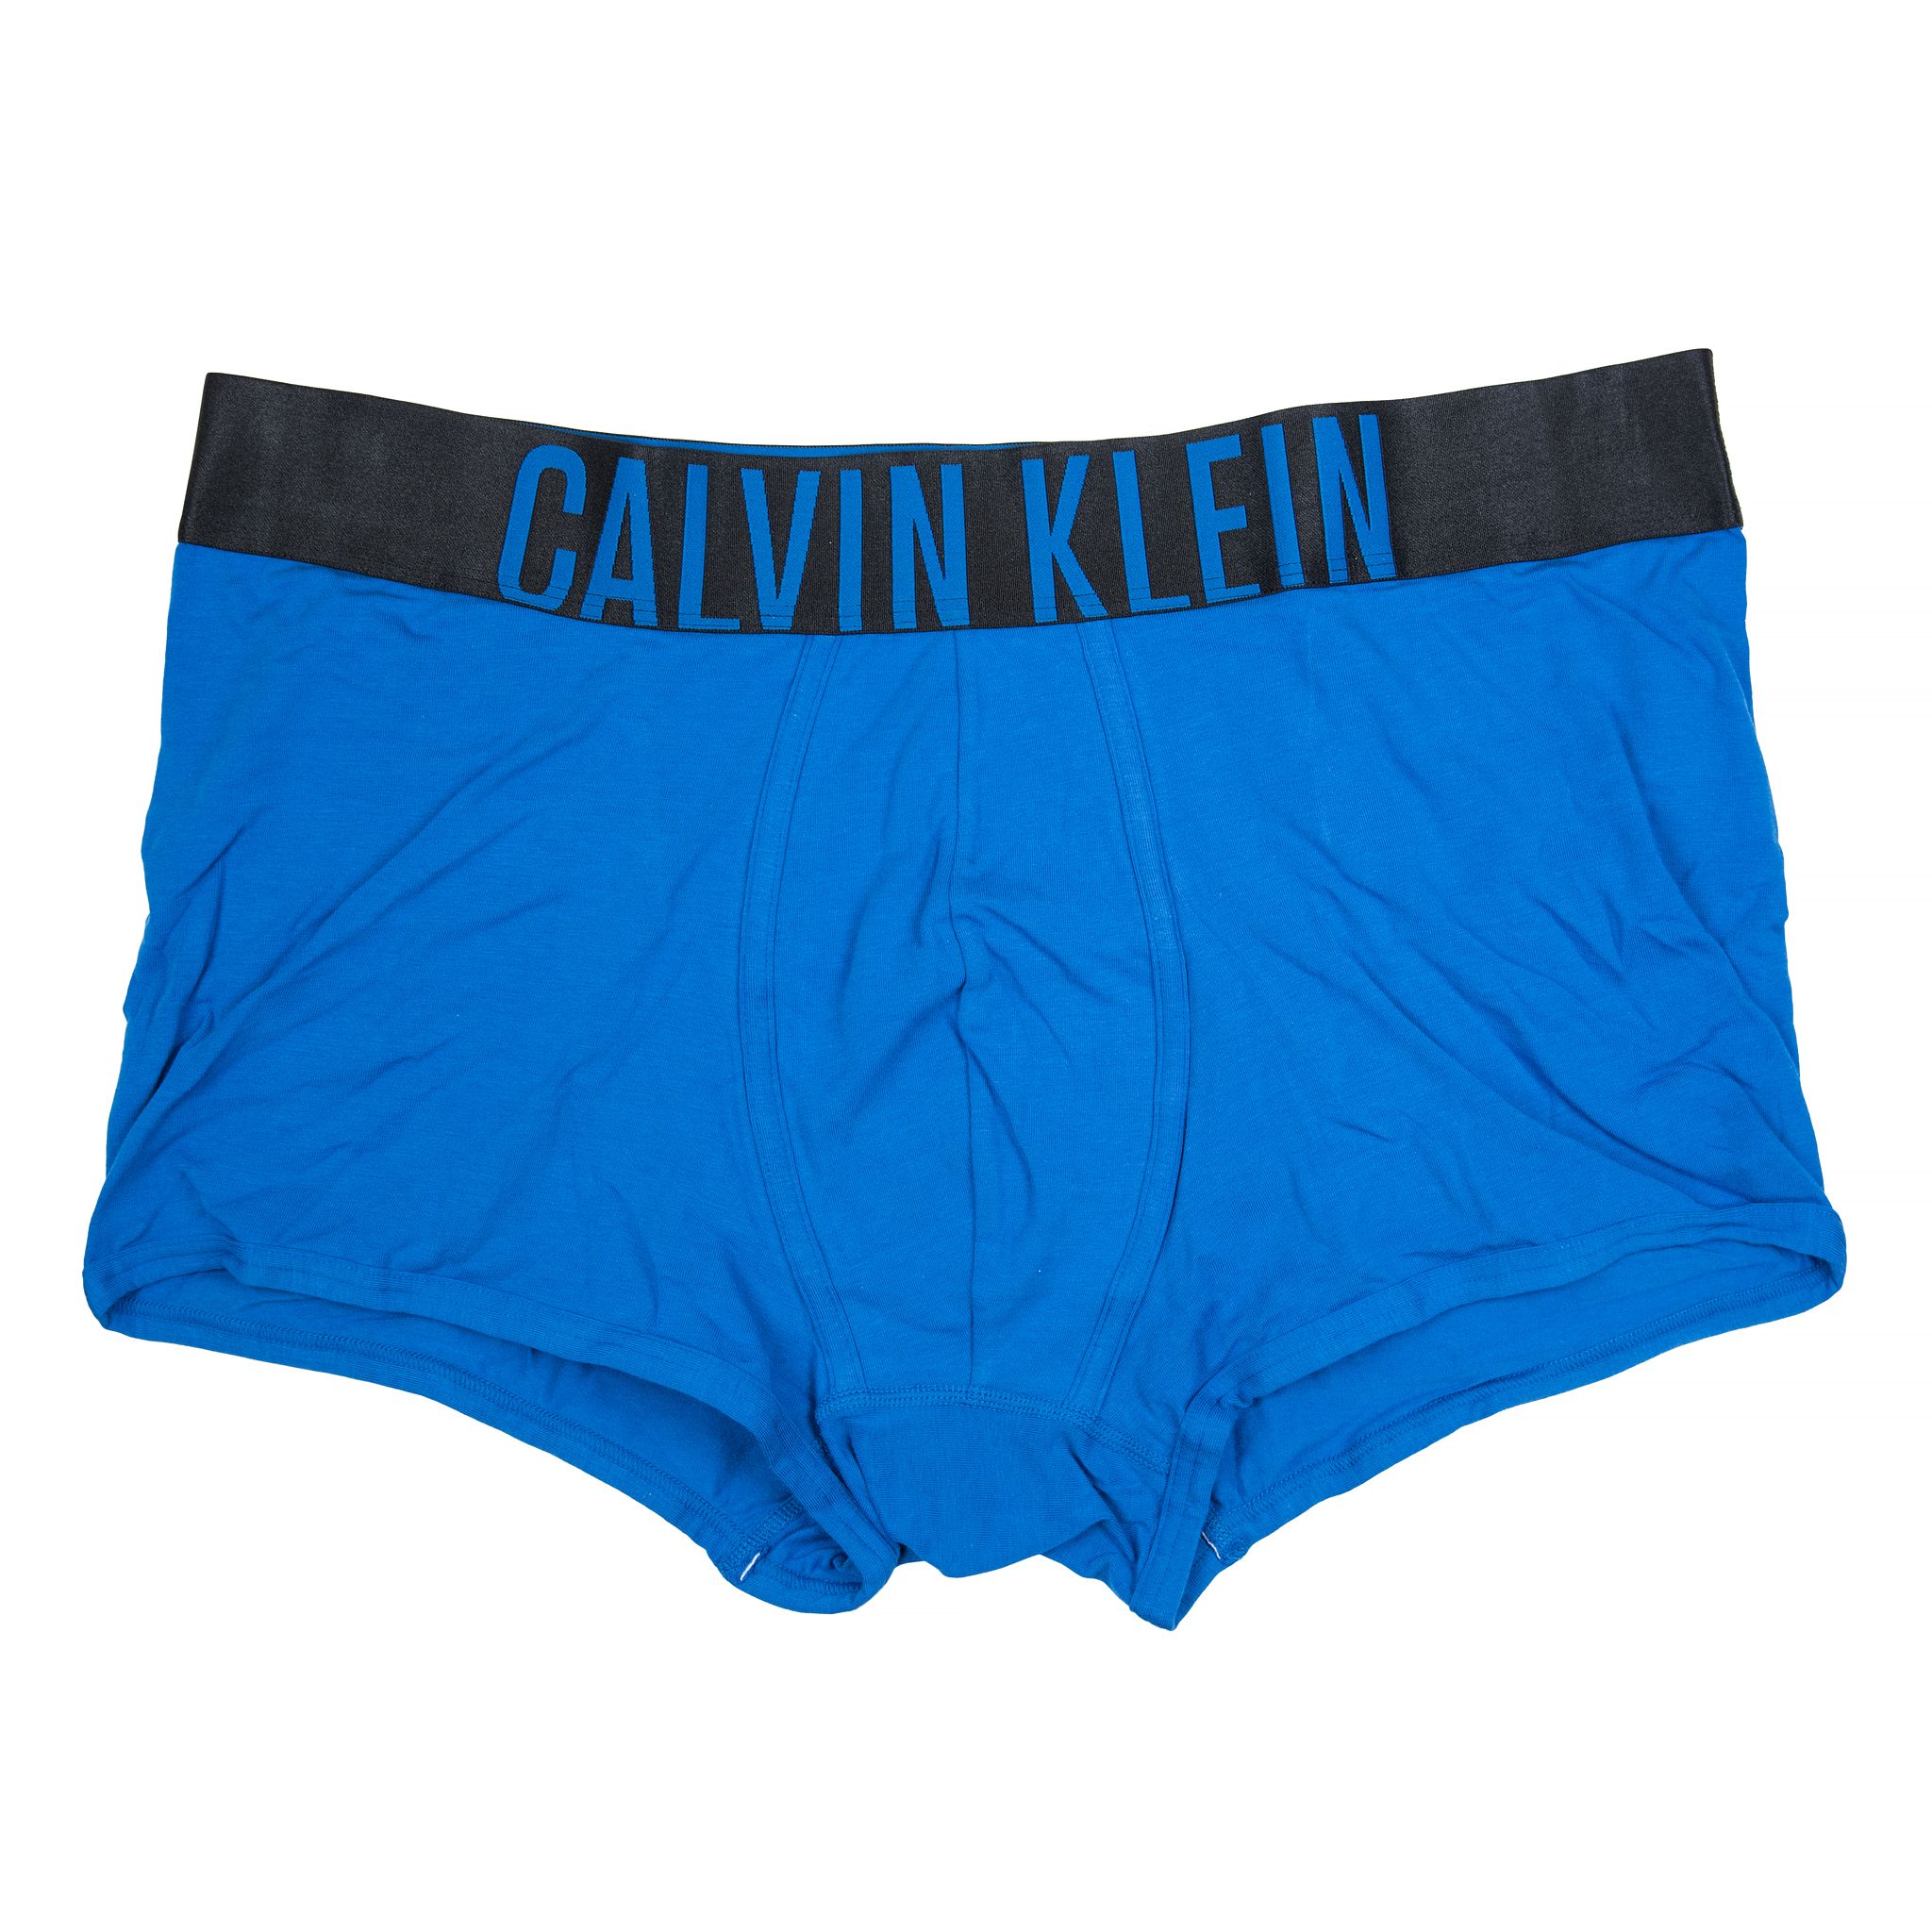 Трусы мужские Calvin Klein - рейтинг 3,50 по отзывам экспертов ☑ Экспертиза  состава и производителя | Роскачество